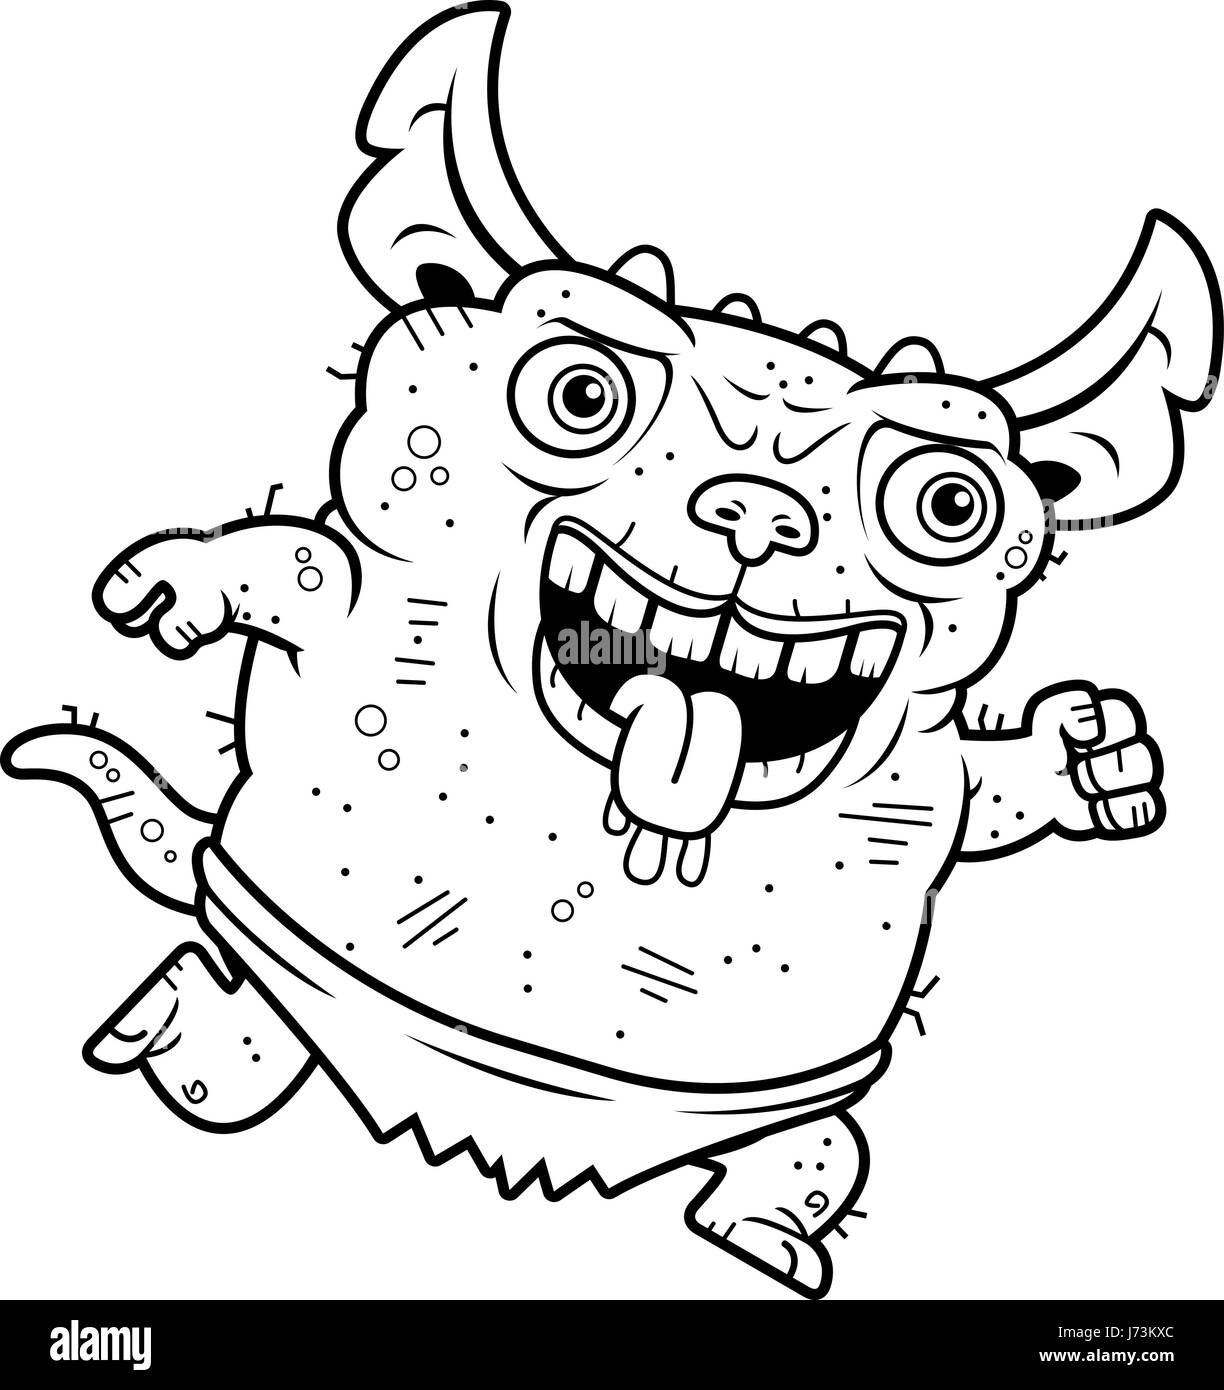 A cartoon illustration of an ugly gremlin running. Stock Vector